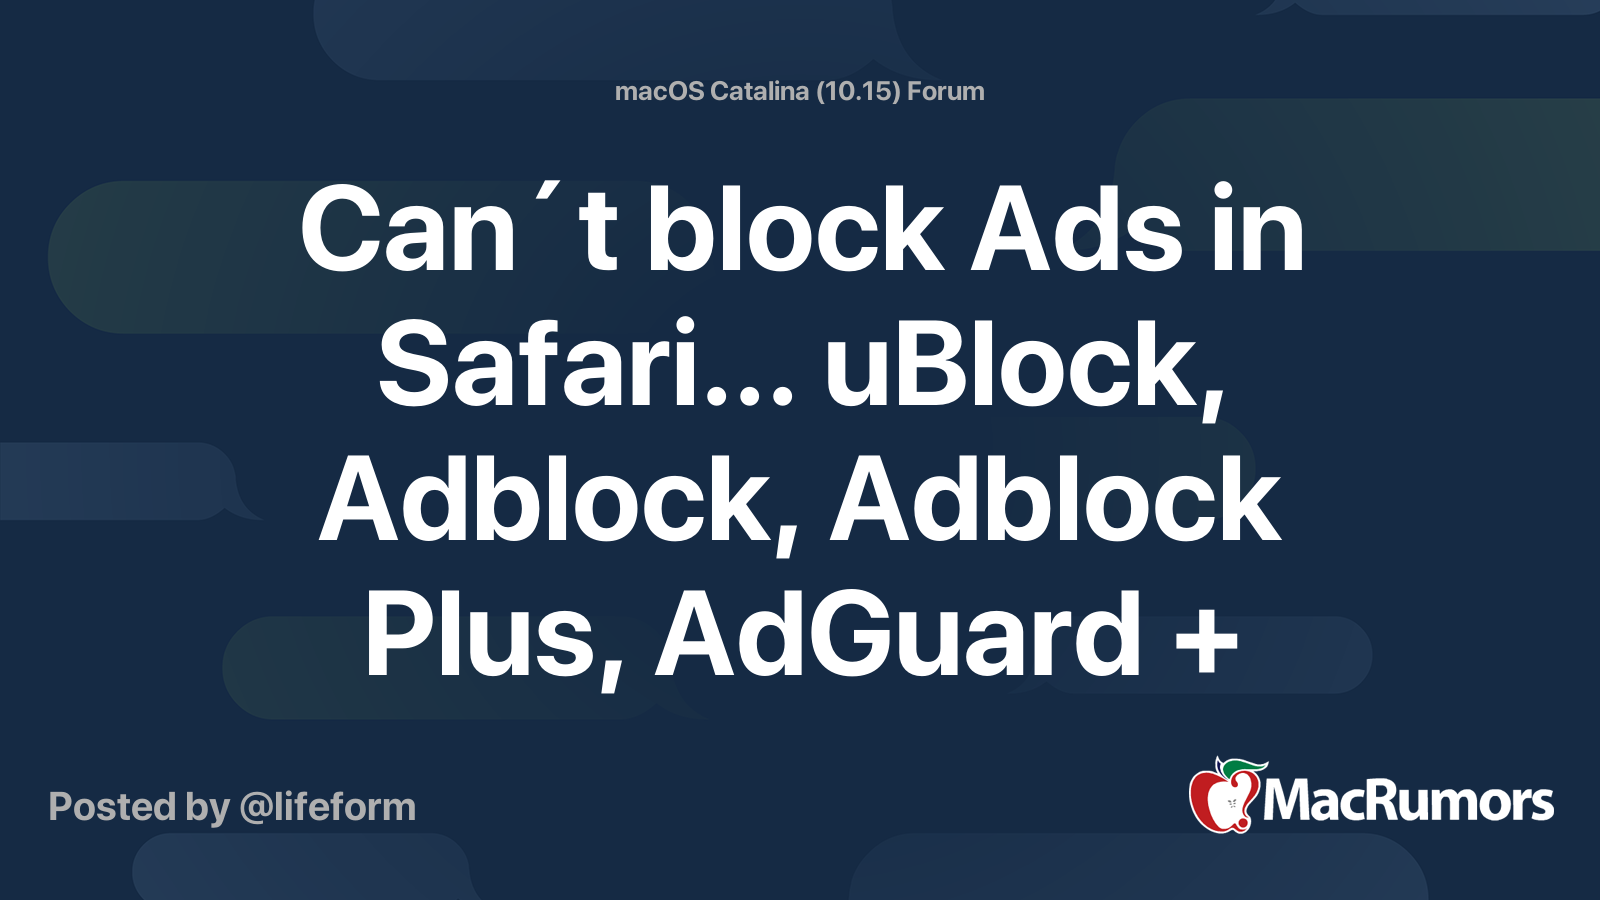 1blocker vs adguard reddit